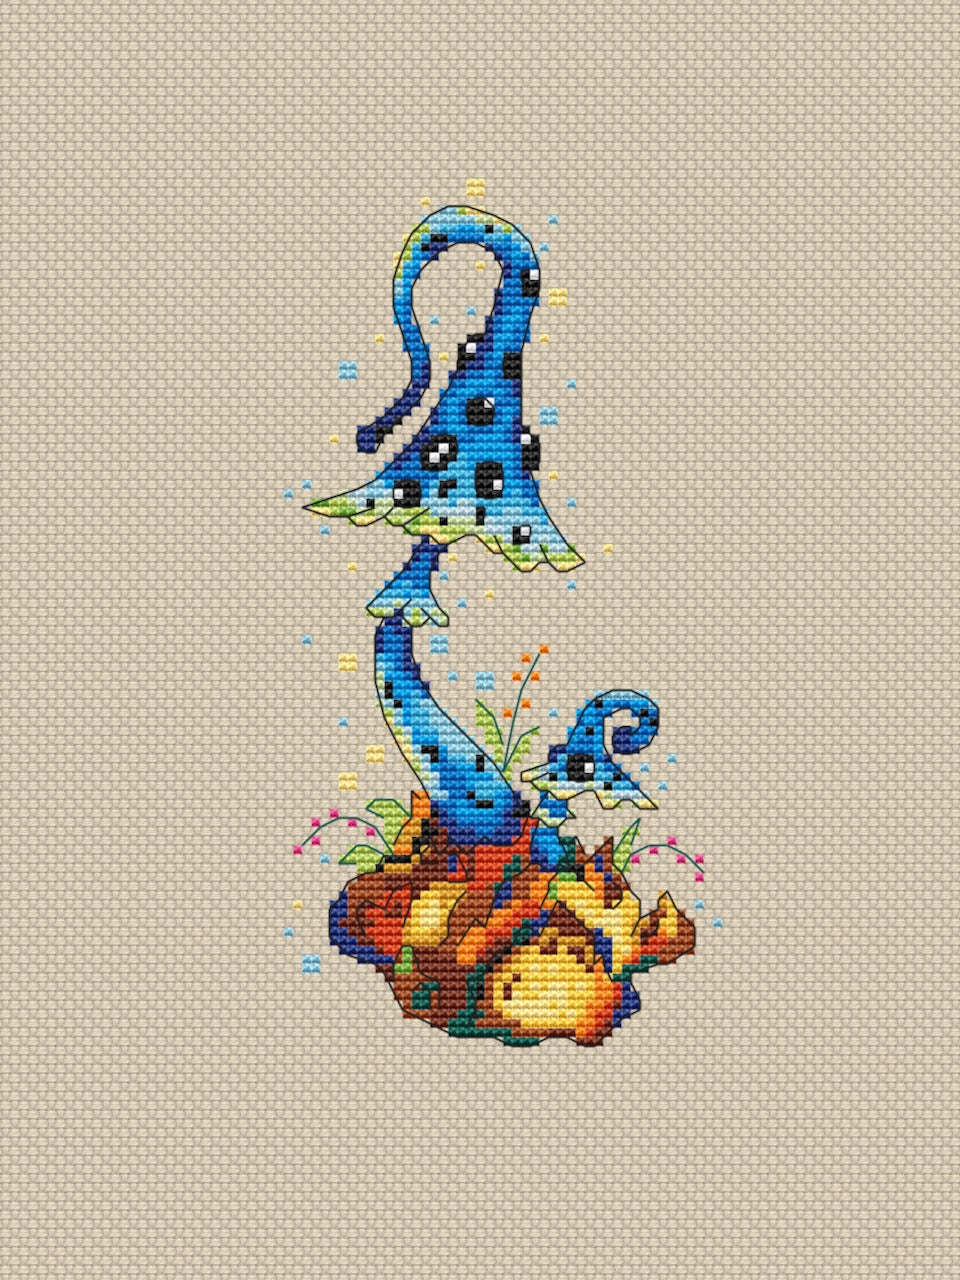 Magic Mushroom cross stitch pattern-3